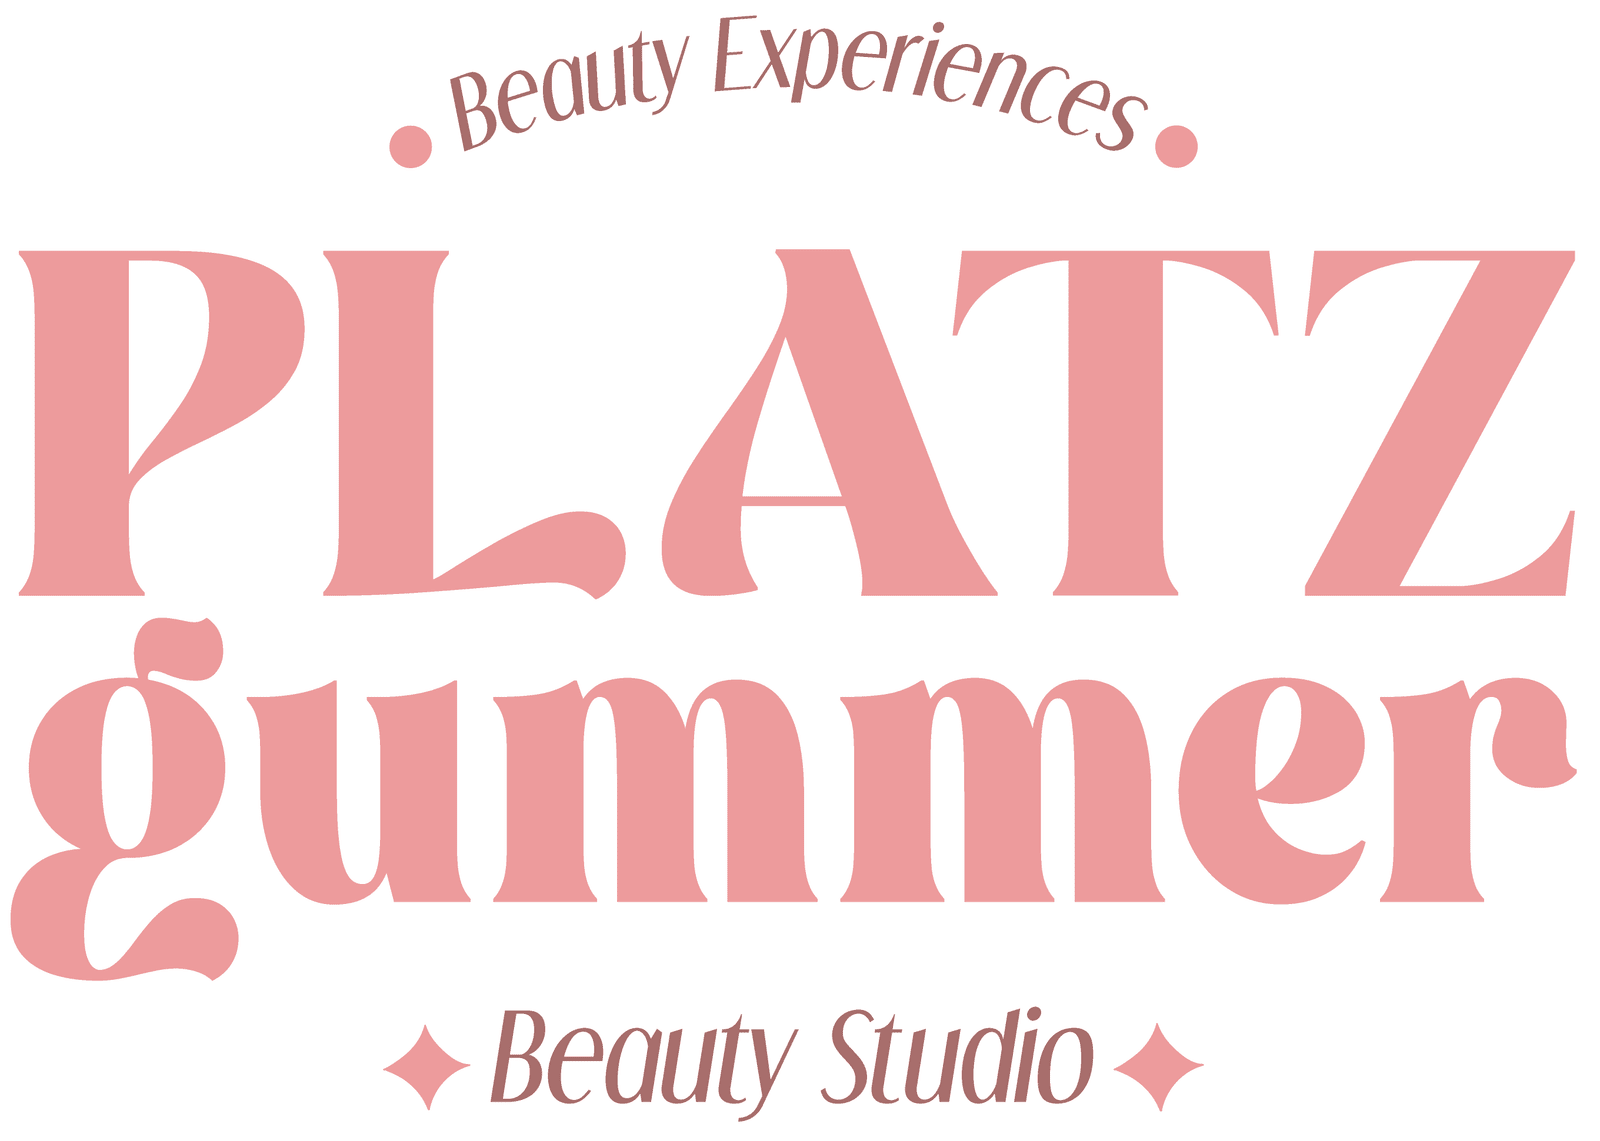 Platzgummer Beauty Studio